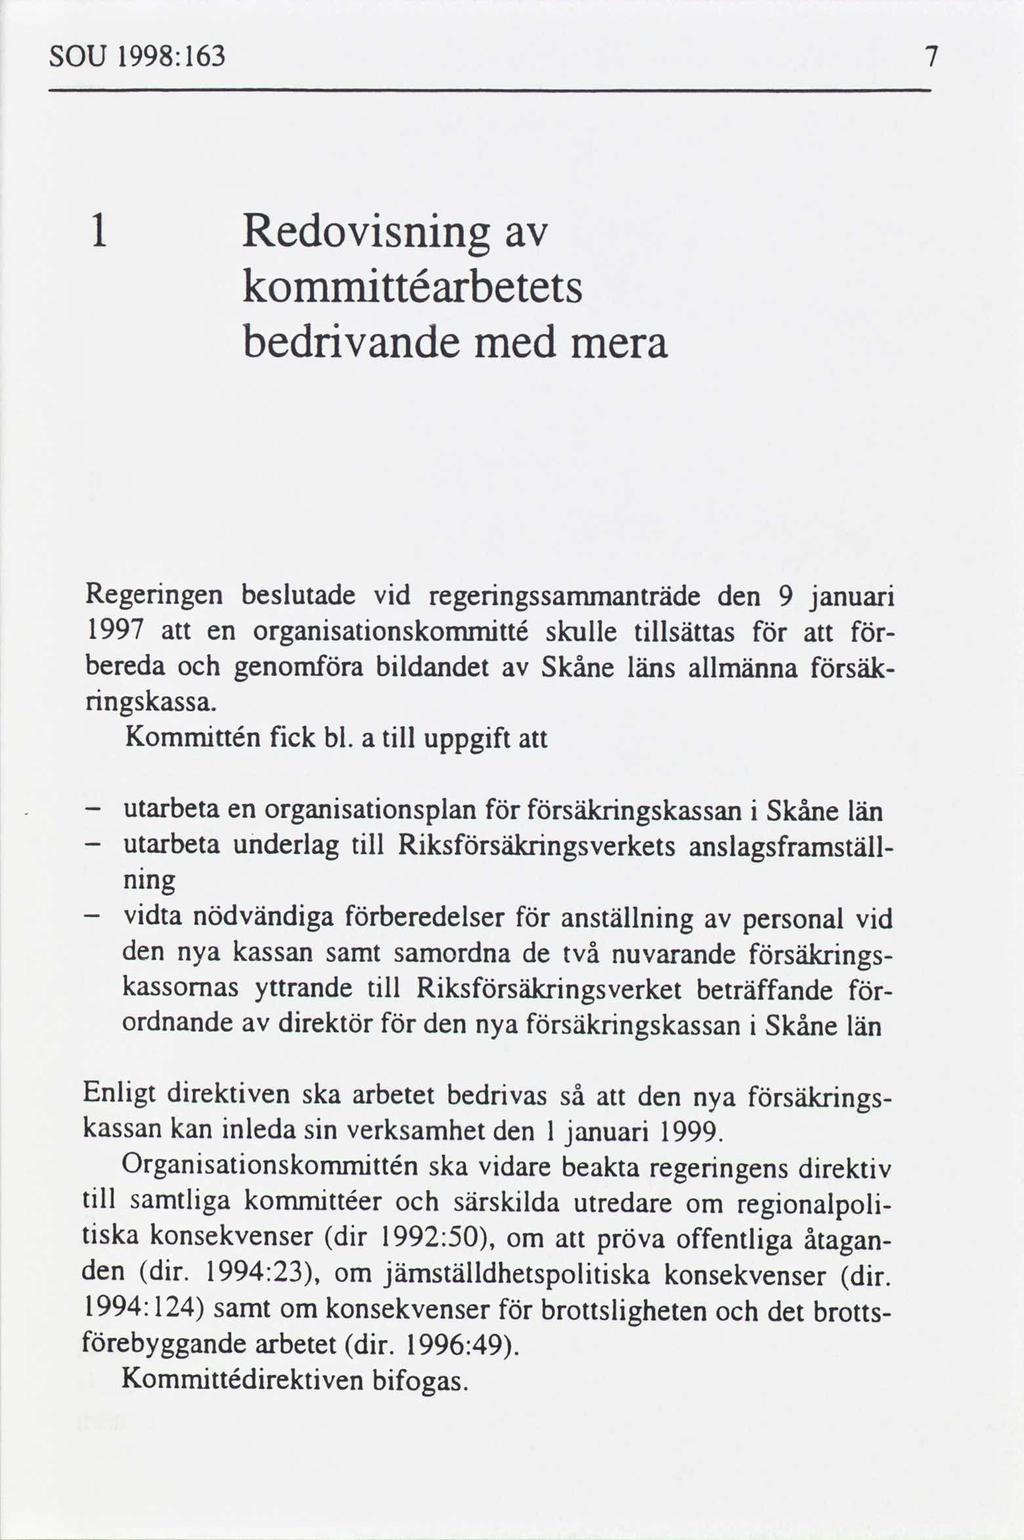 SOU 1998: 163 1 Redovsnng kommttéarbetets bedrvande med mera Regerngen beslutade vd regerngssammanträde den 9 januar 1997 en organsatonskommtté skulle tllsättas bereda genoma bldandet Skåne läns